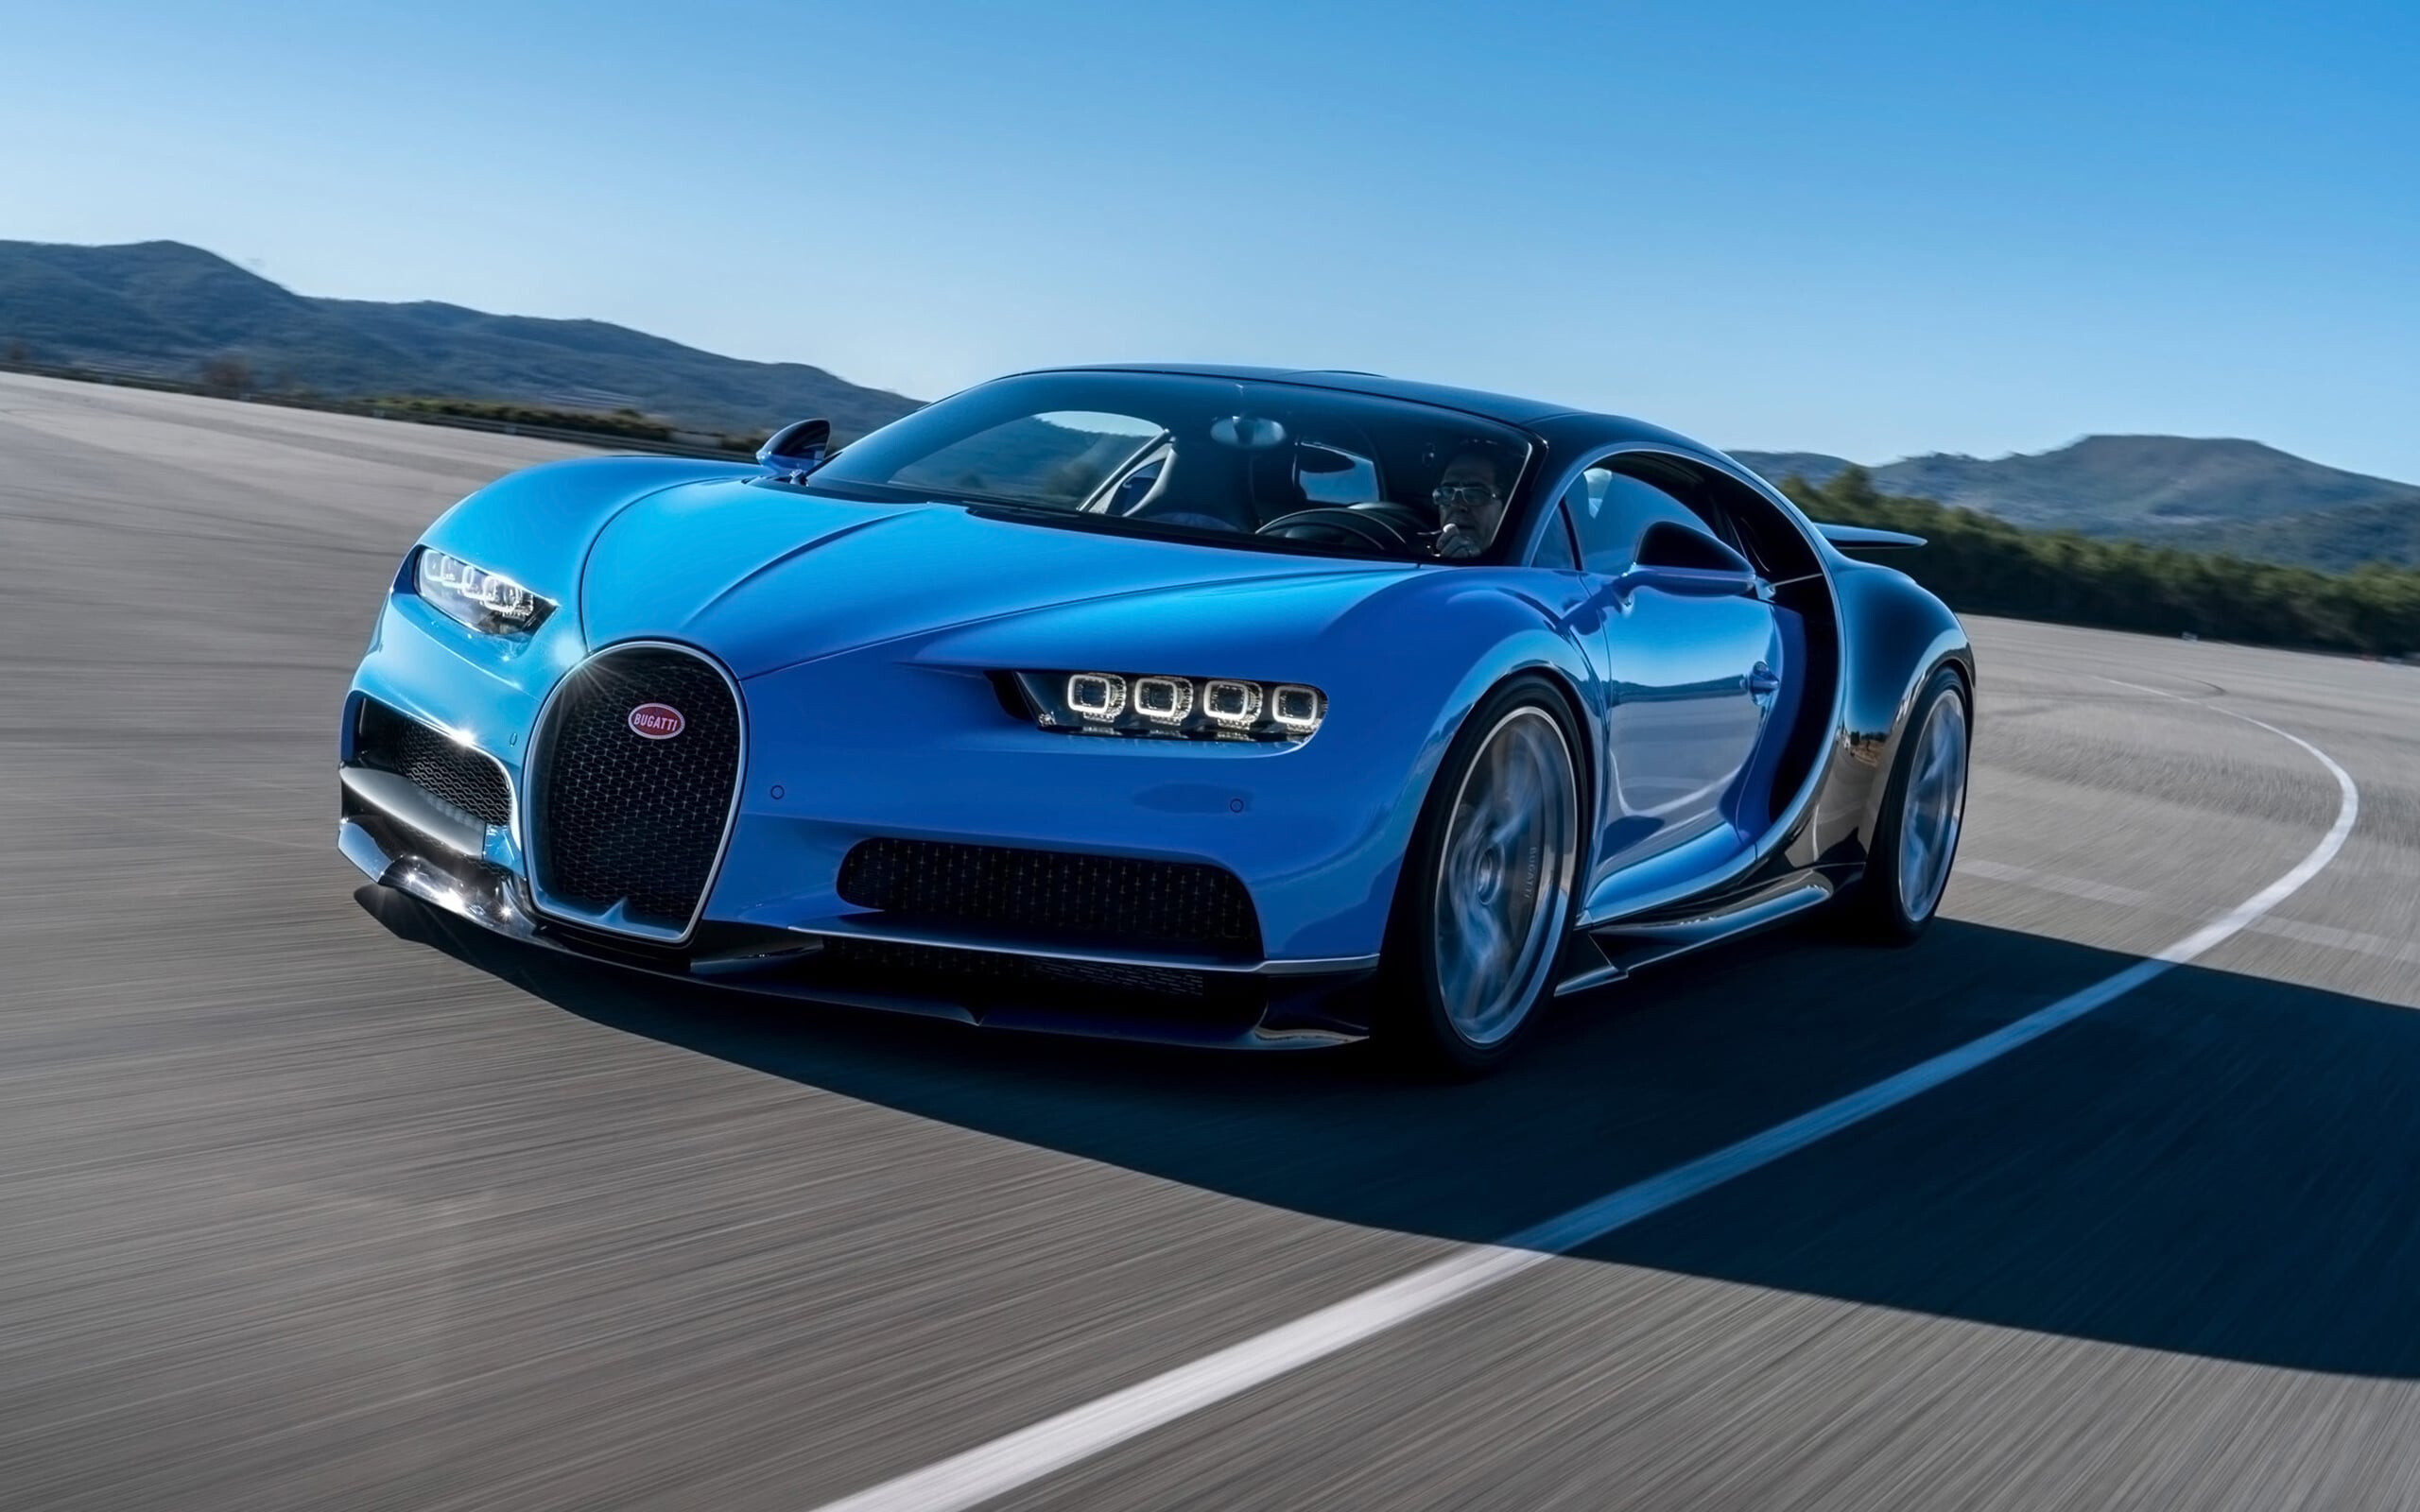 Bugatti: Chiron, based on the Vision Gran Turismo concept car. 2560x1600 HD Wallpaper.